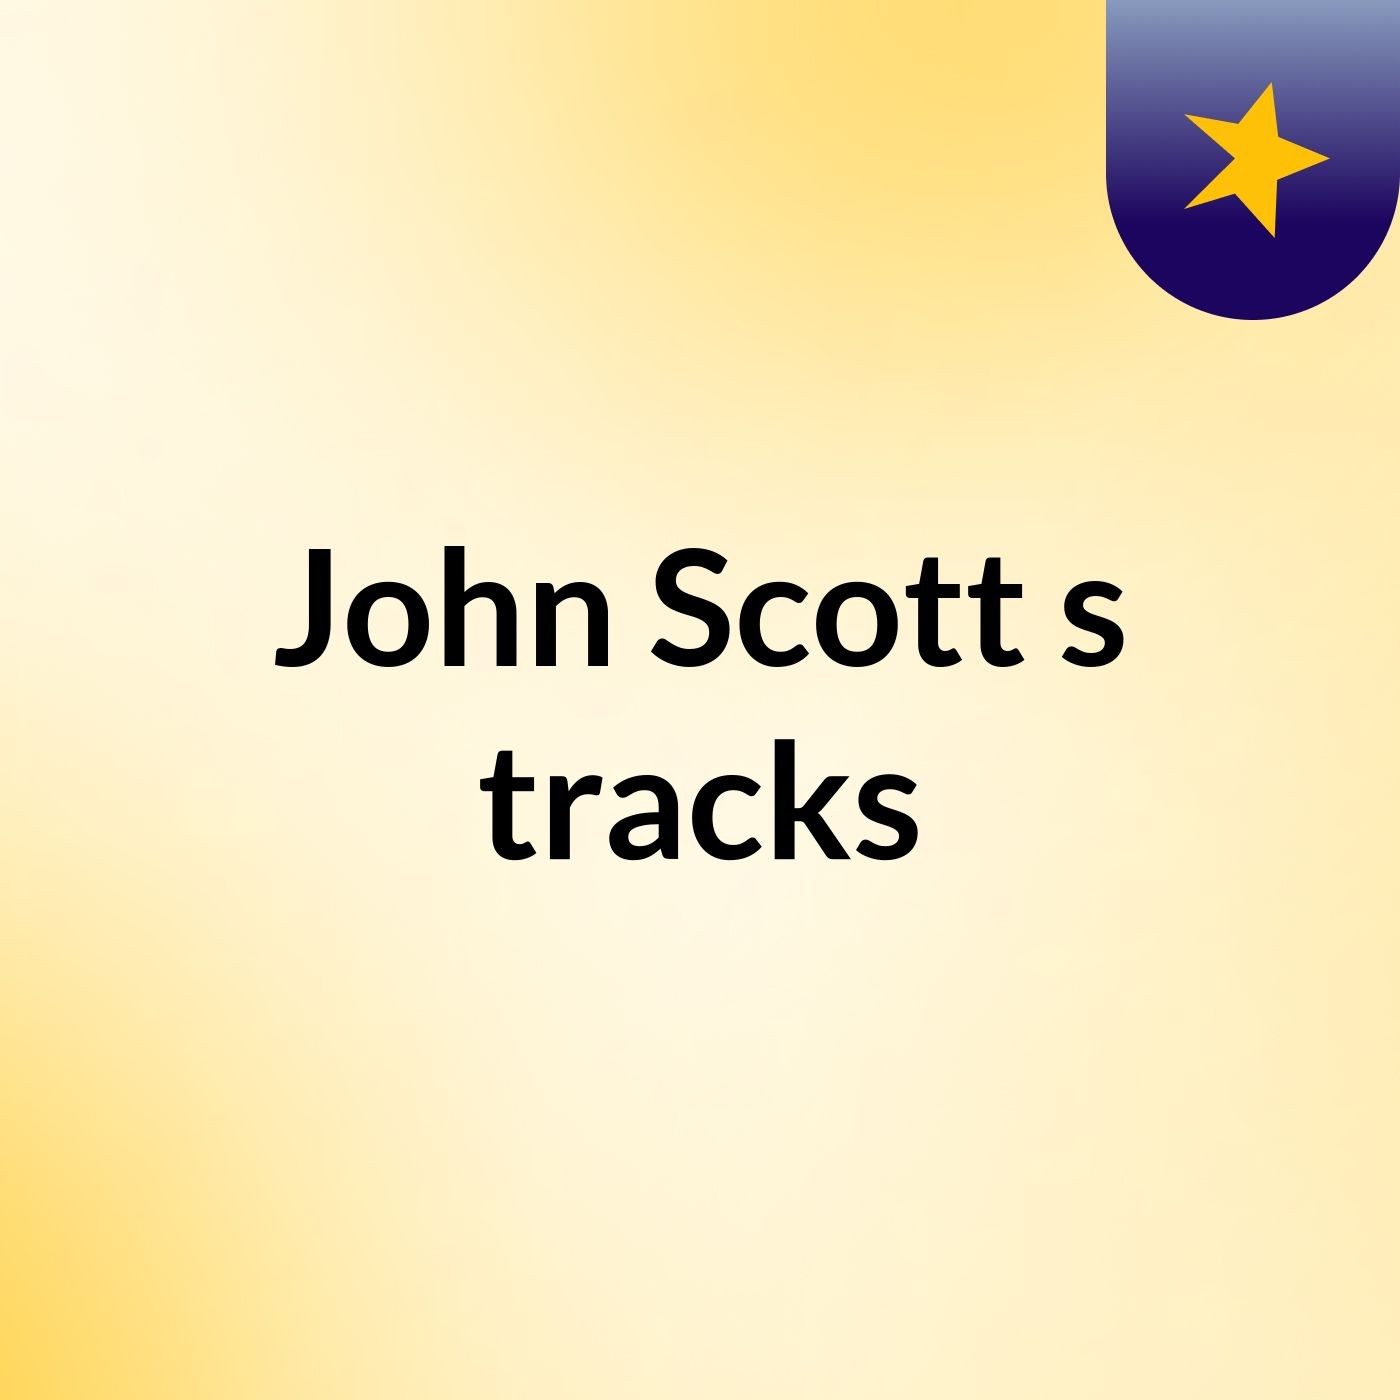 John Scott's tracks